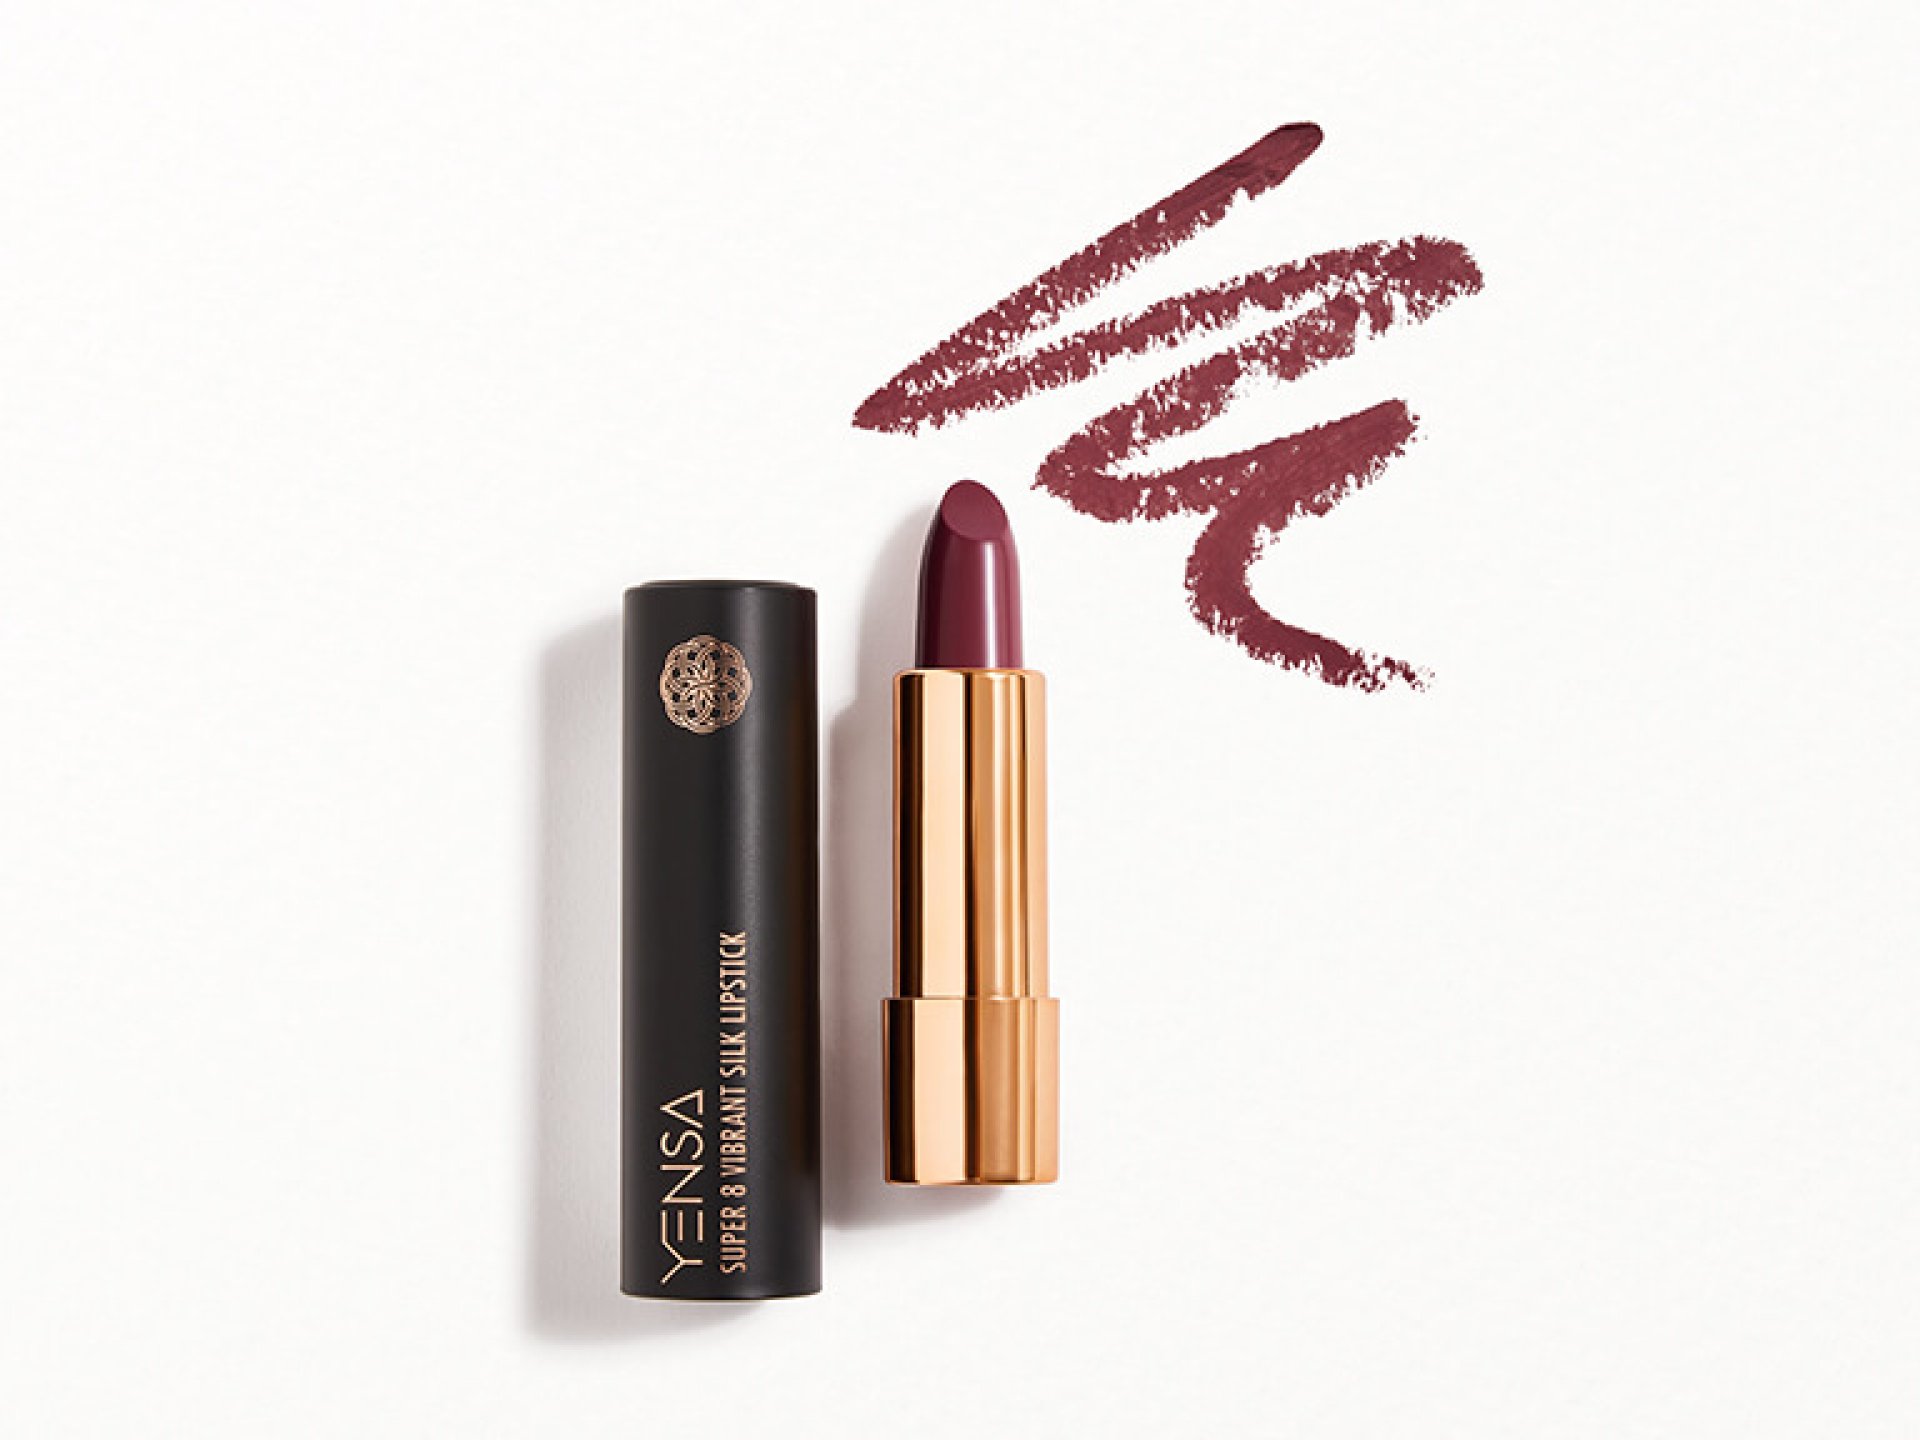 YENSA BEAUTY Super 8 Vibrant Silk Lipstick in Noble